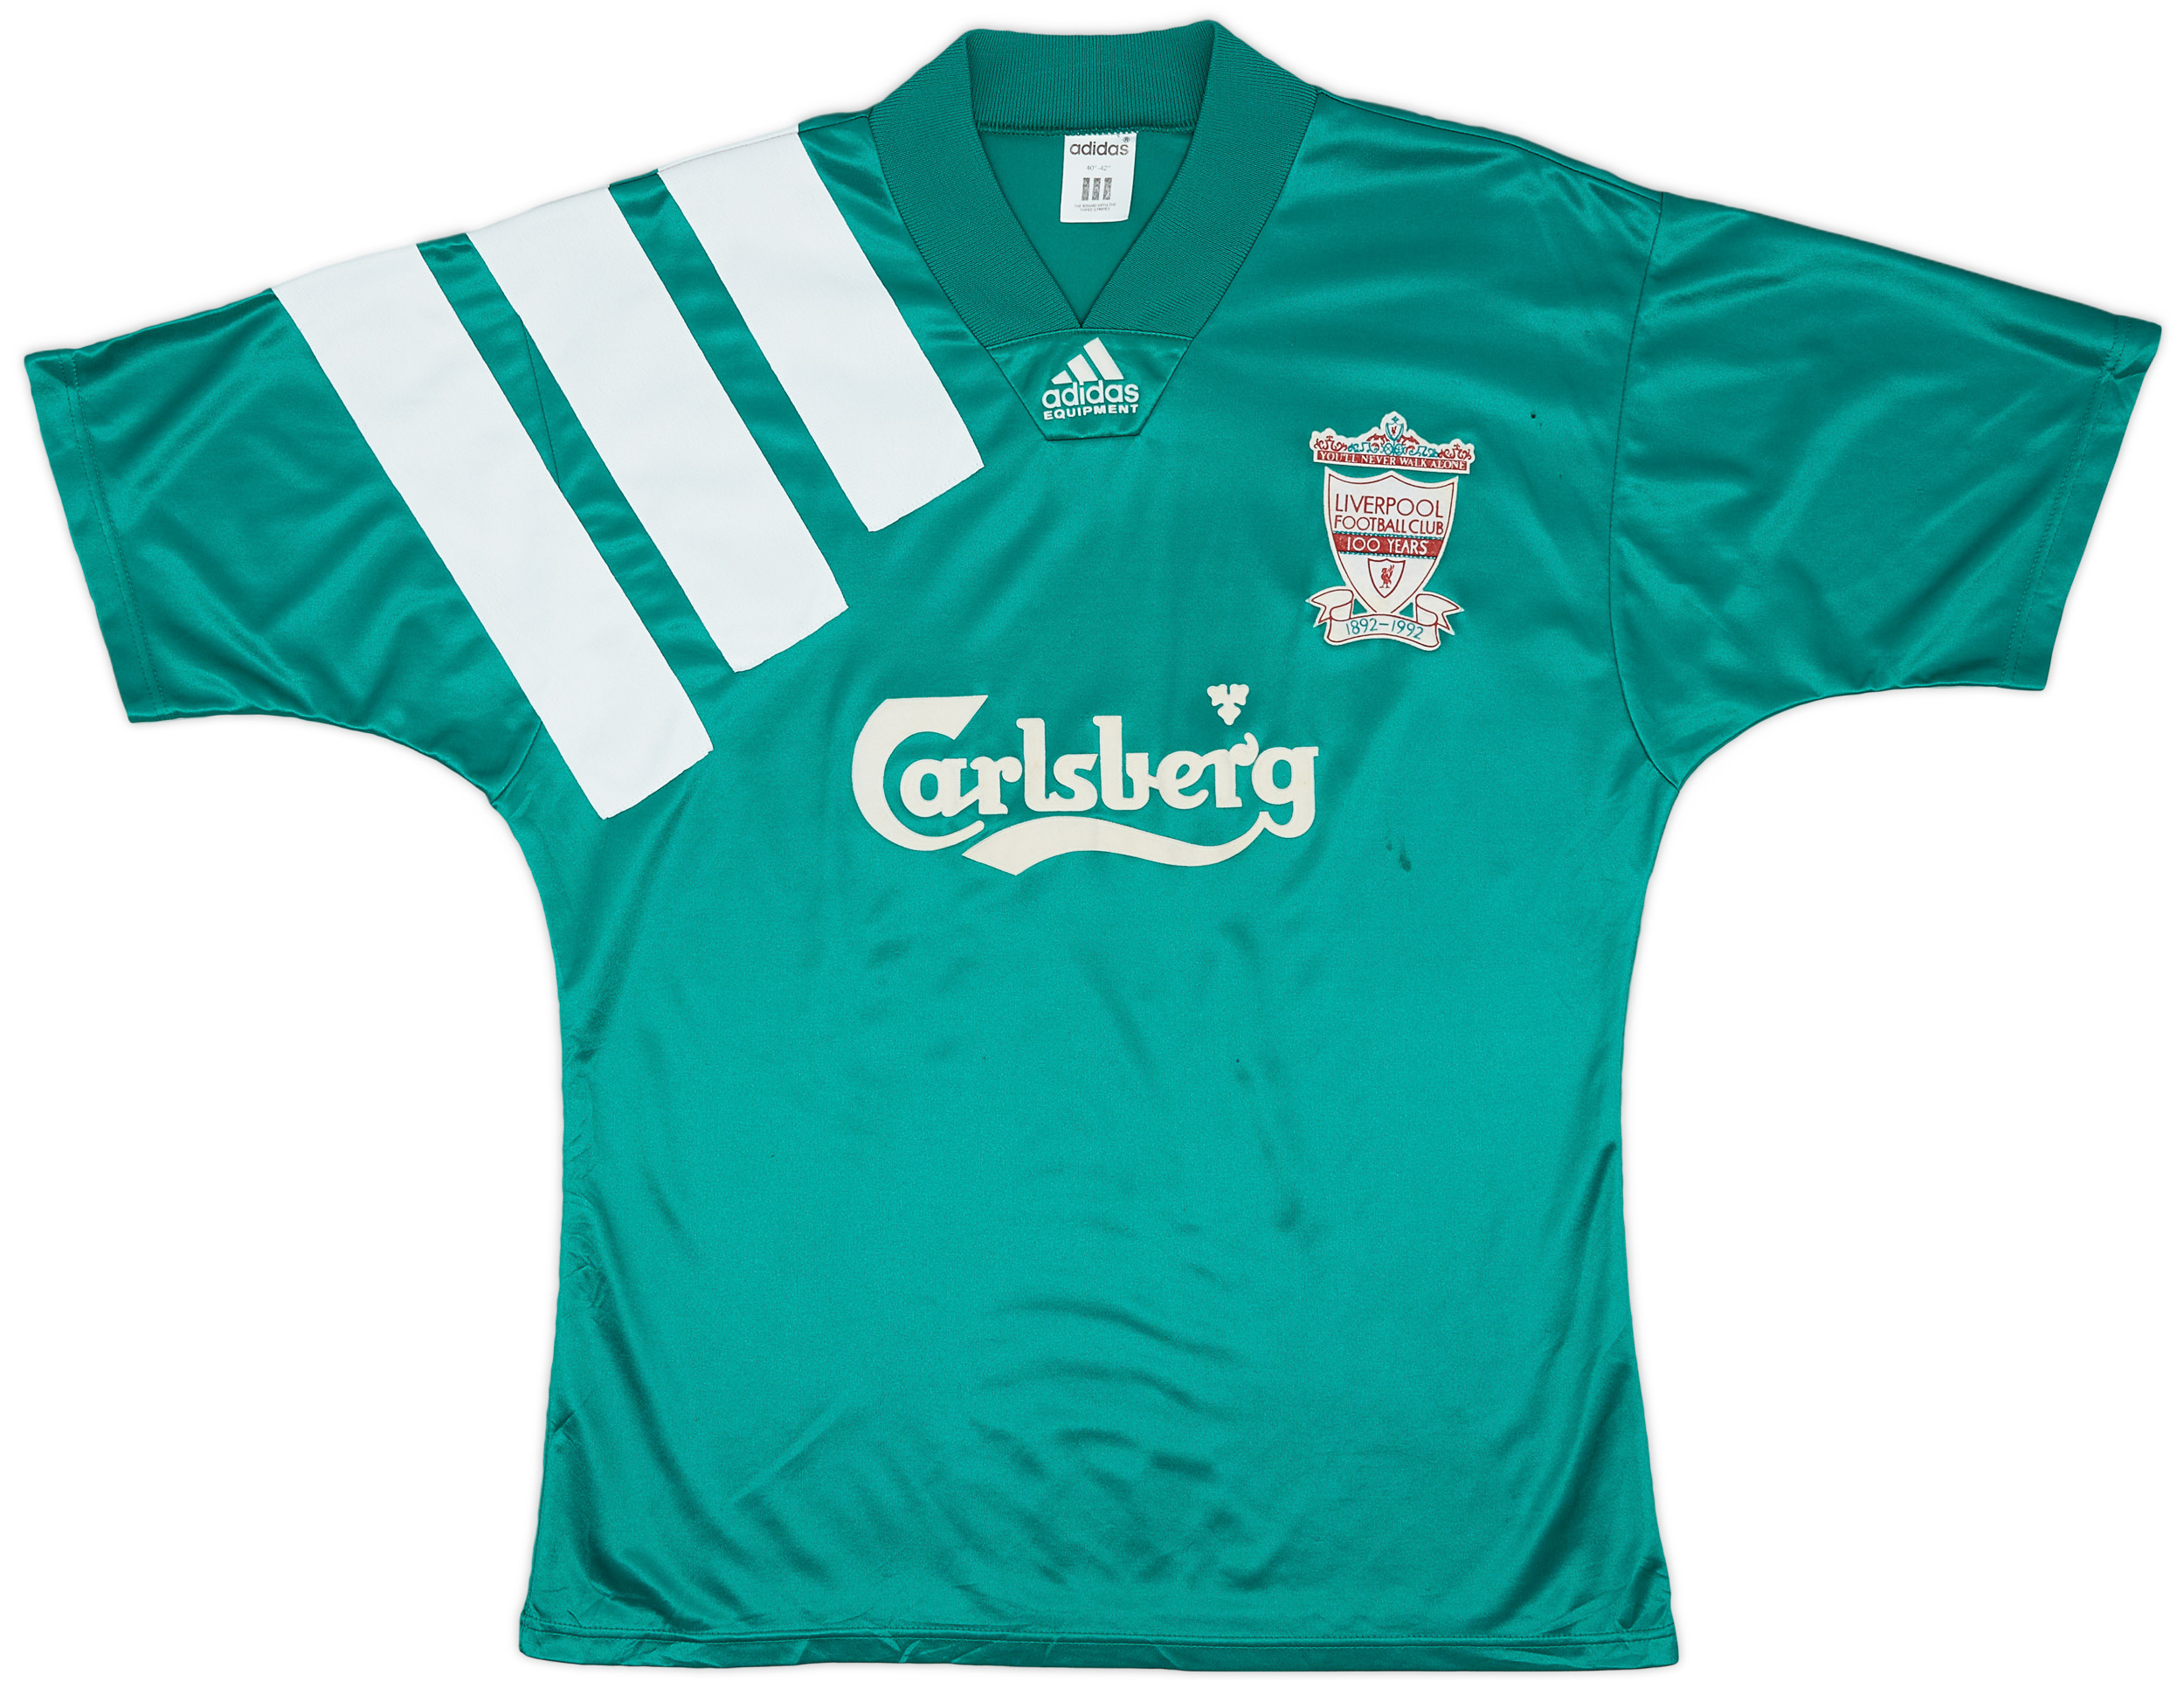 1992-93 Liverpool Centenary Away Shirt - 5/10 - (/)